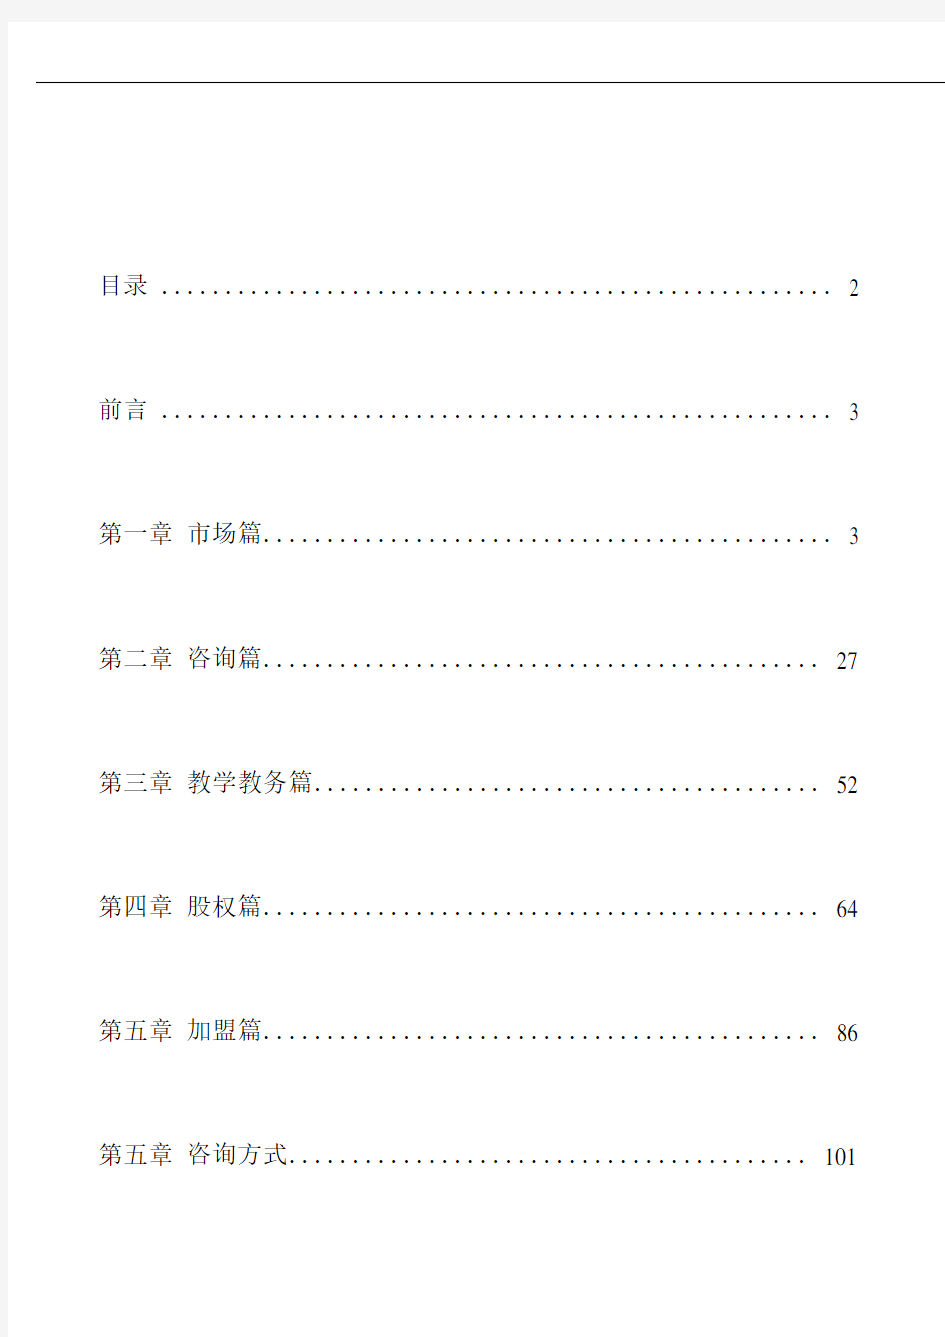 教育培训机构系统升级手册(101页)-朗培-2020.03